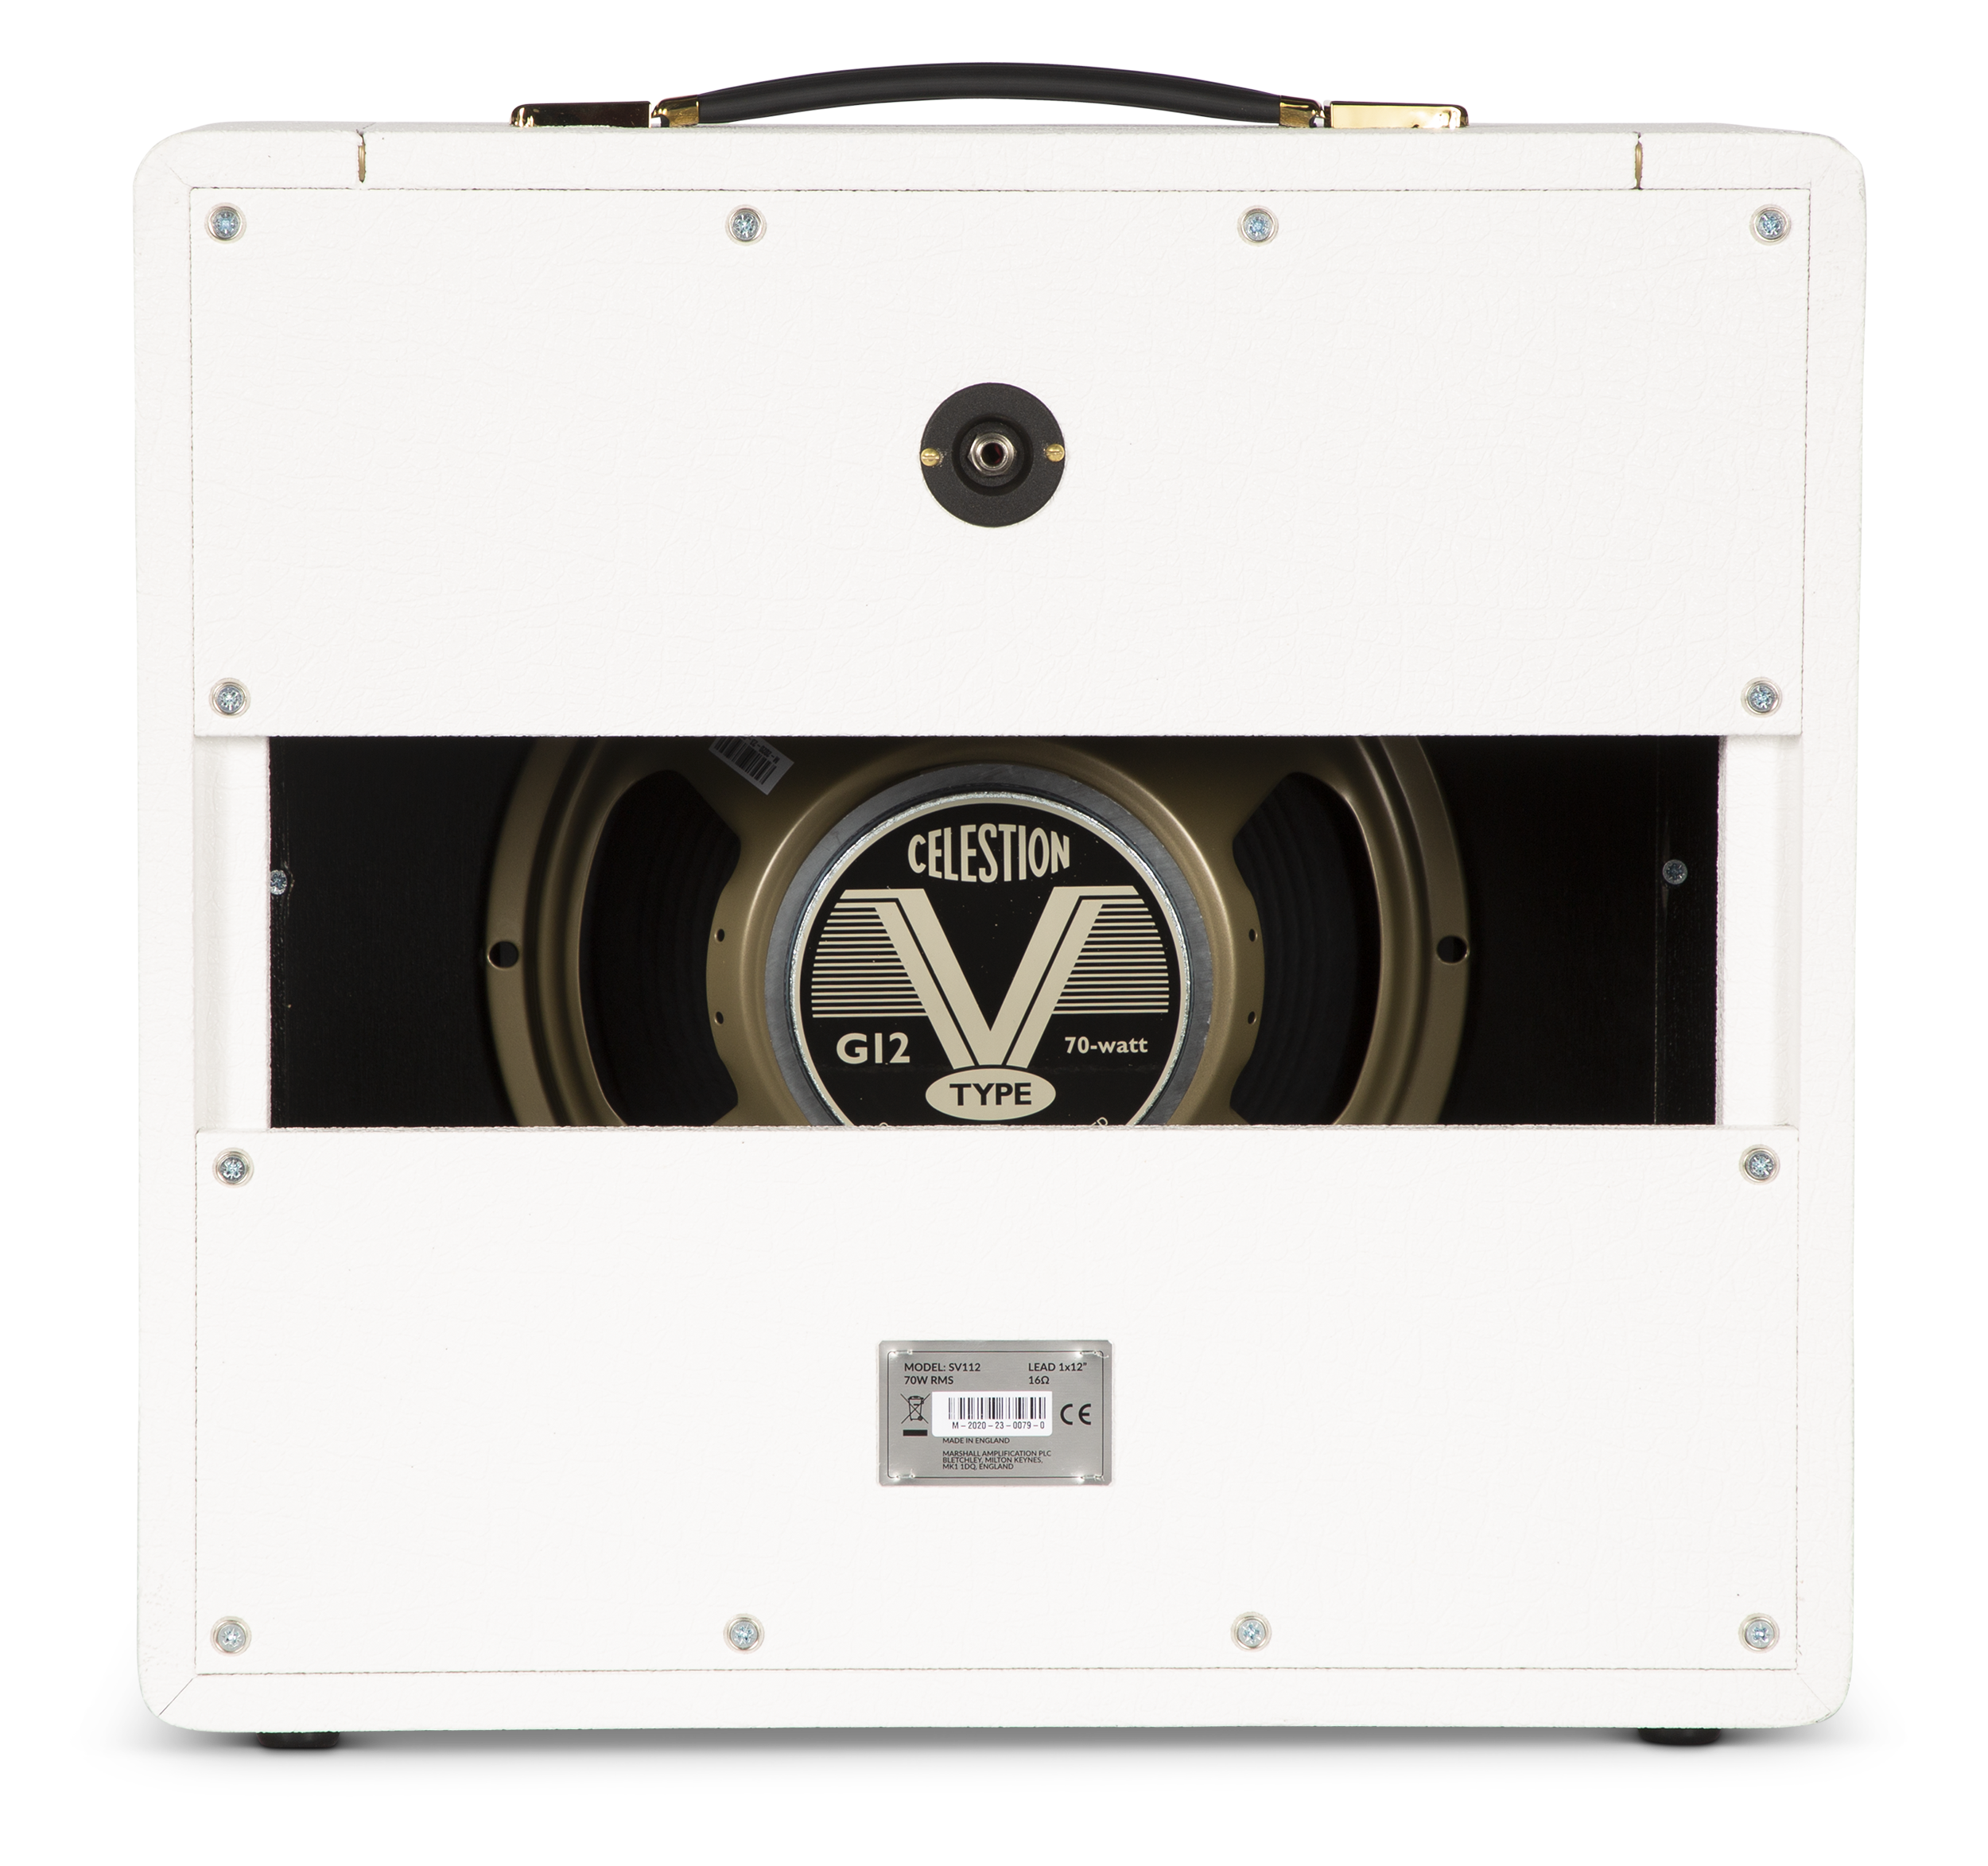 Marshall SV112 Studio Vintage 70-watt 1x12" Extension Cabinet - Special Edition